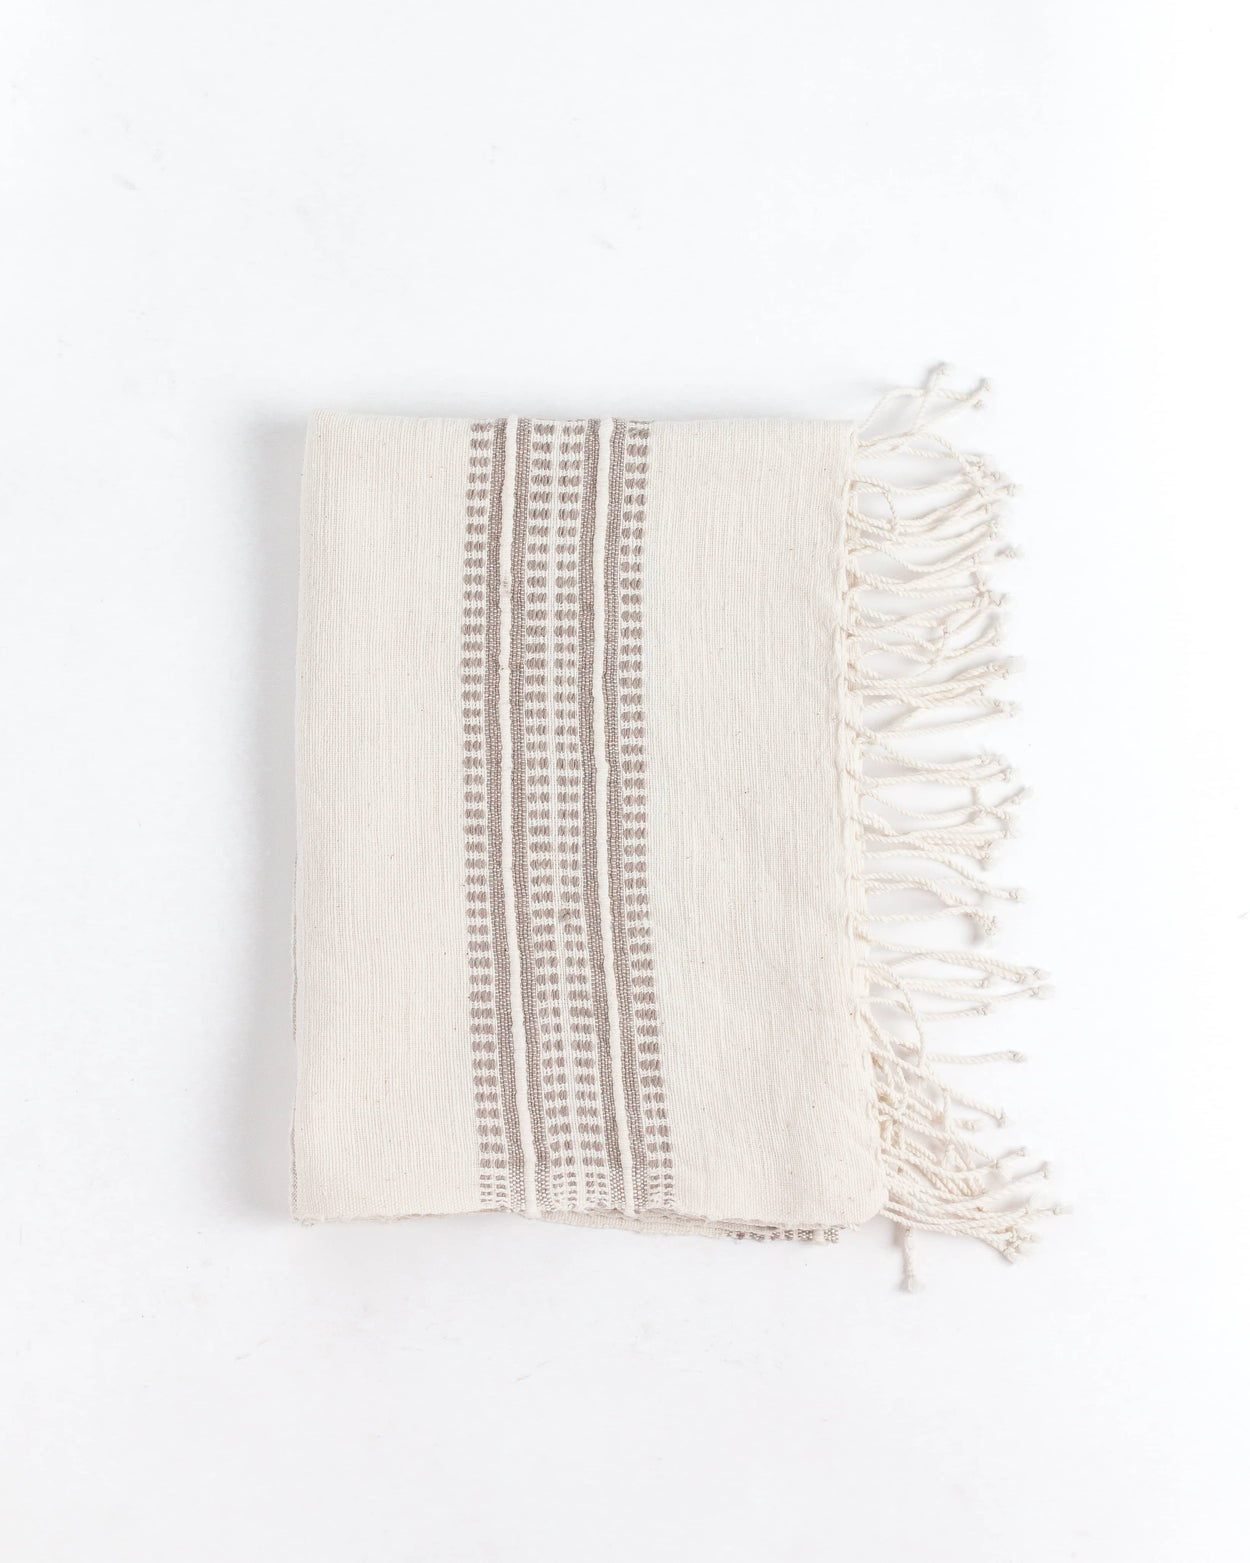 Aden Cotton Hand Towel | Handwoven in Ethiopia Table Linens Creative Women 